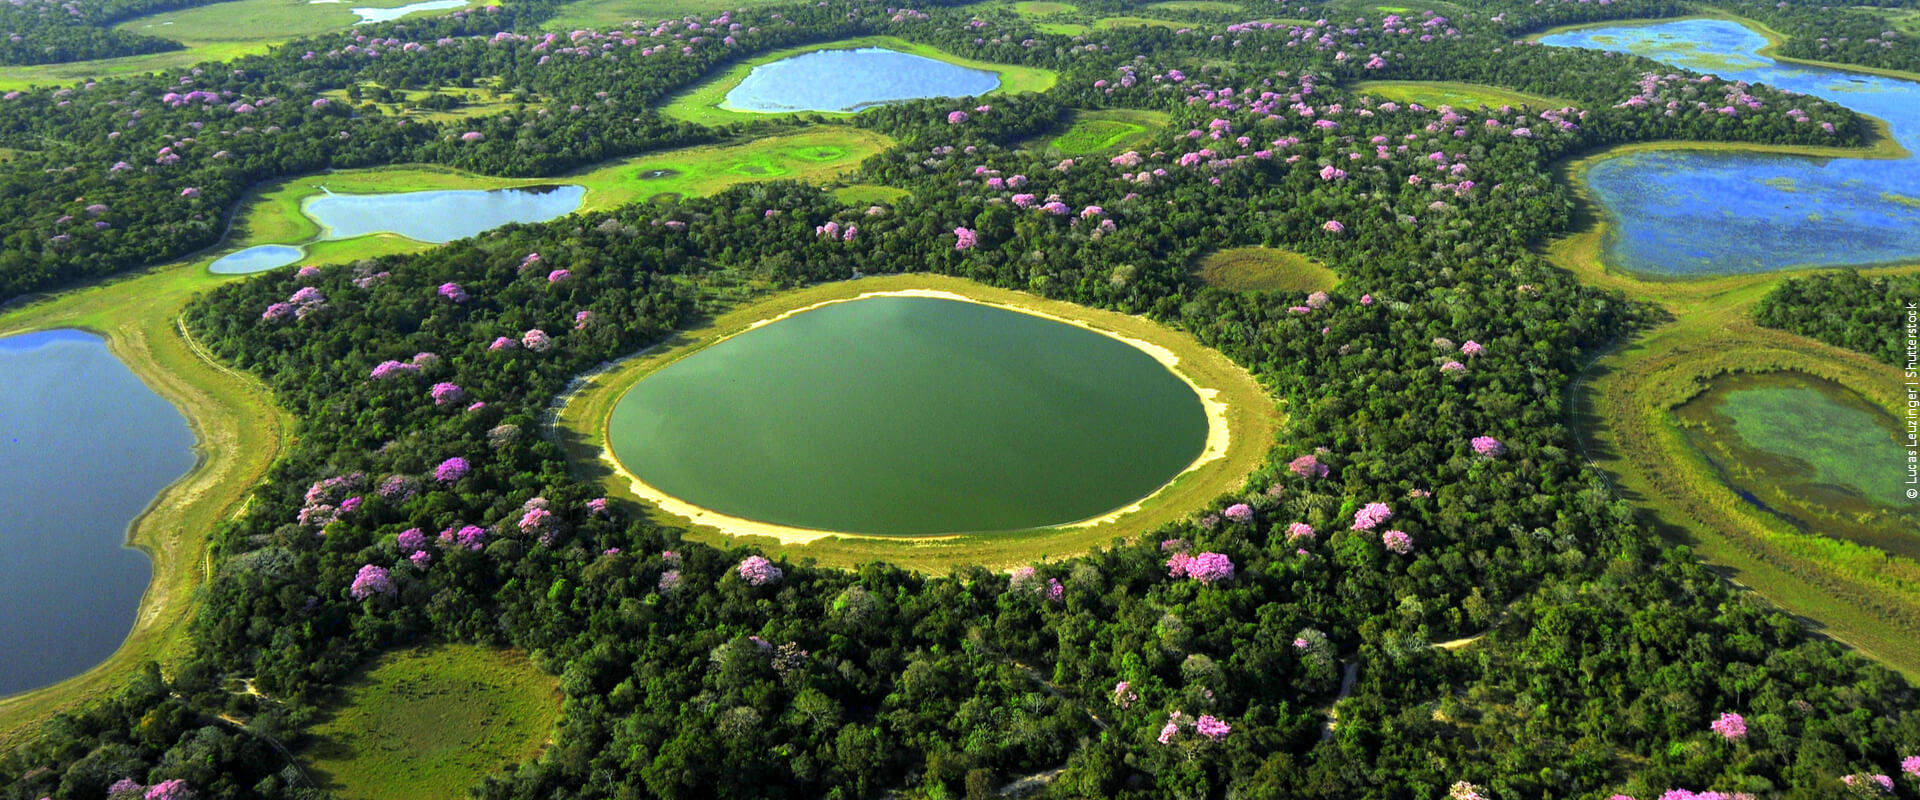 Conheça as melhores experiências turísticas no Pantanal em 2023